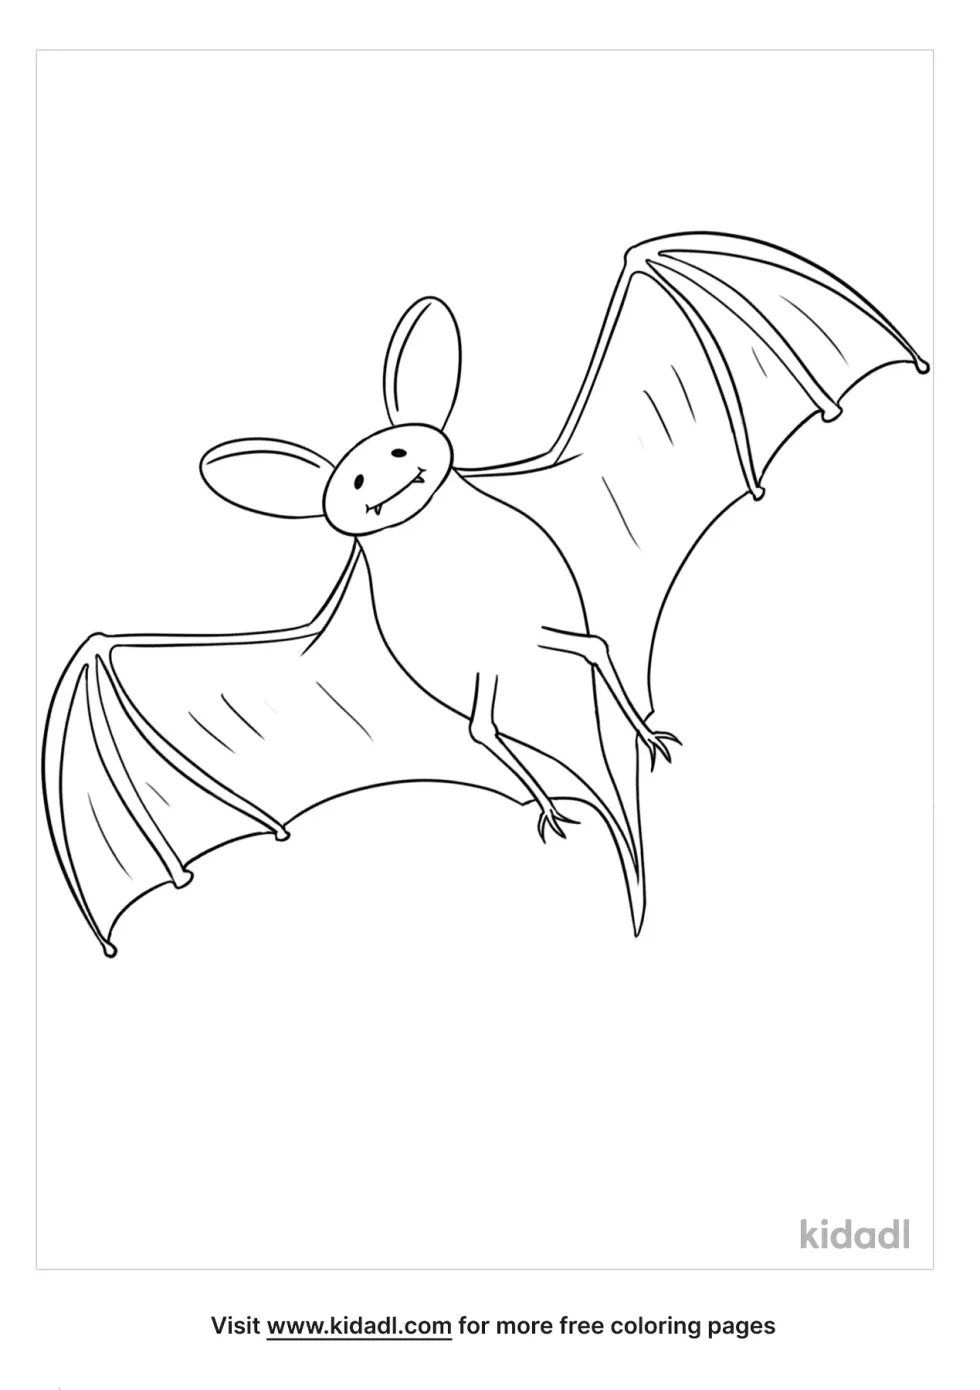 Flying Bat Outline